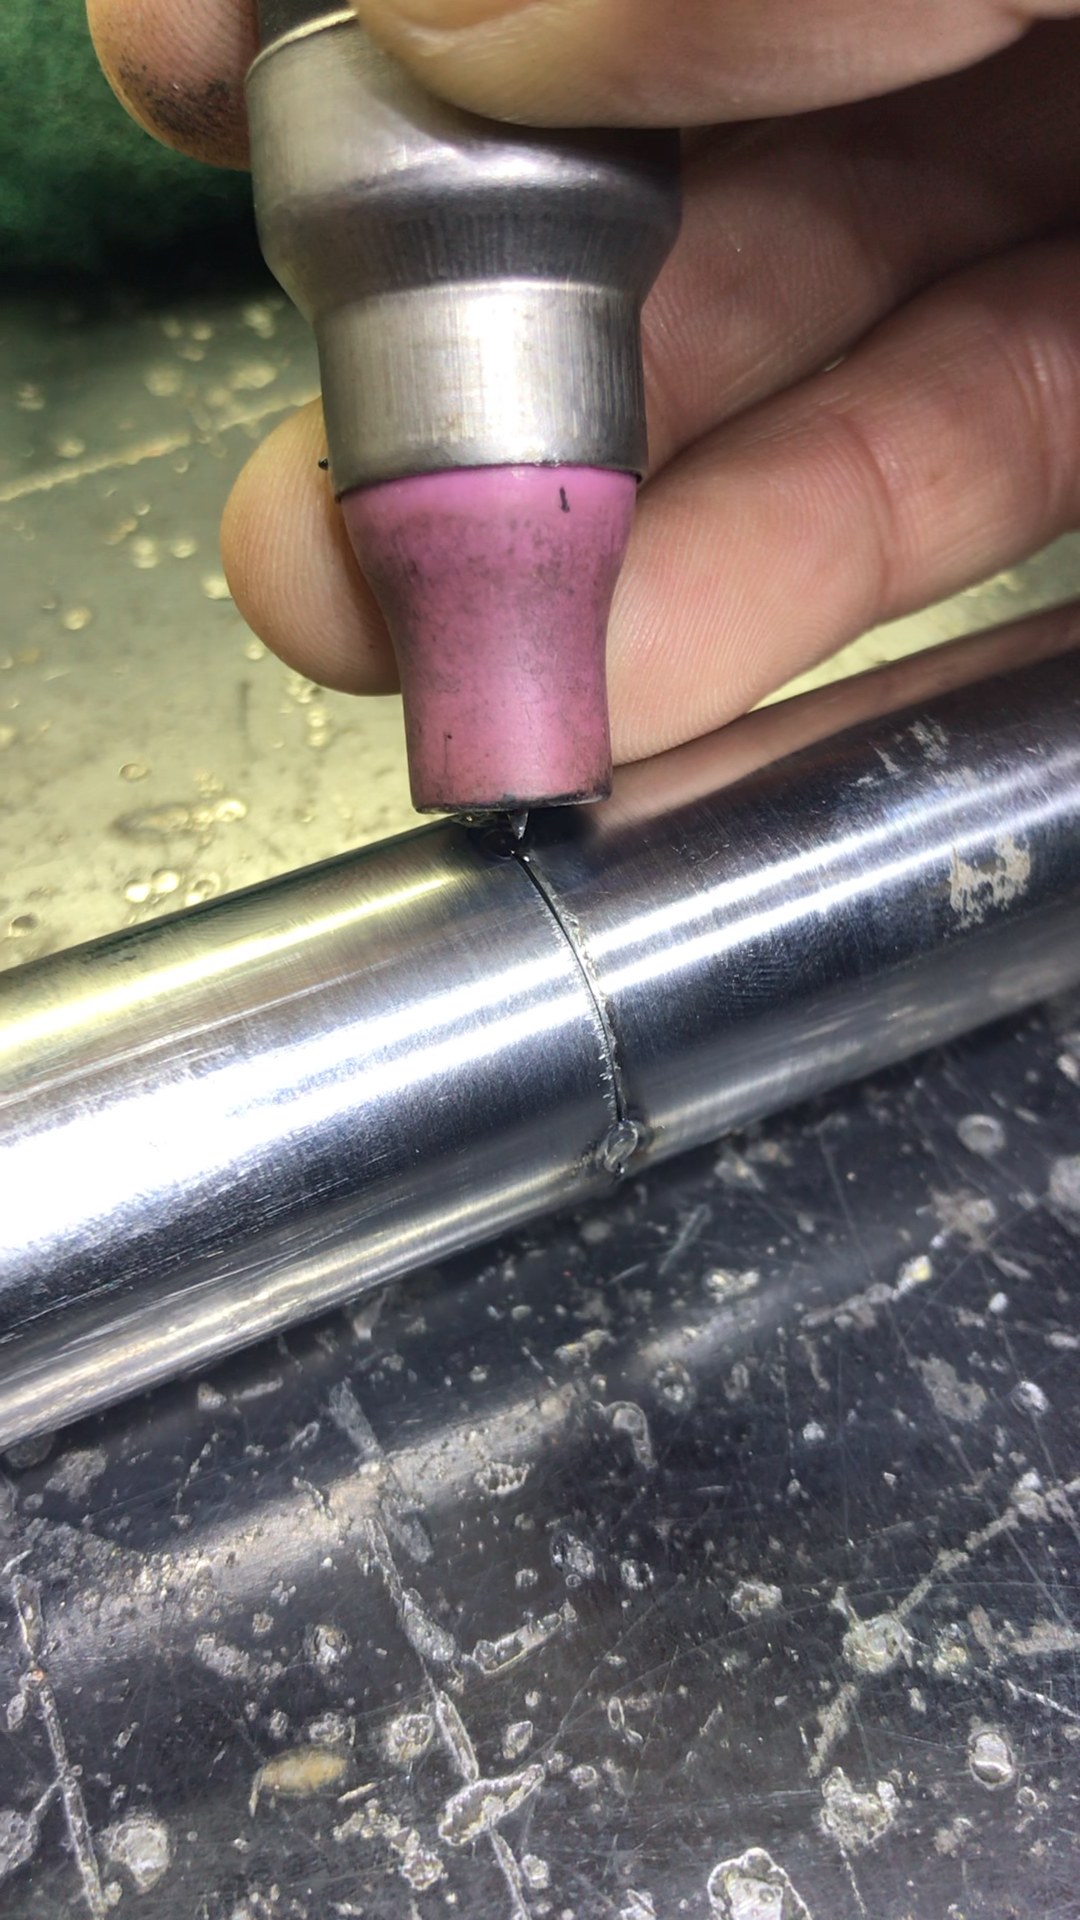 圆管的焊接手法图图片